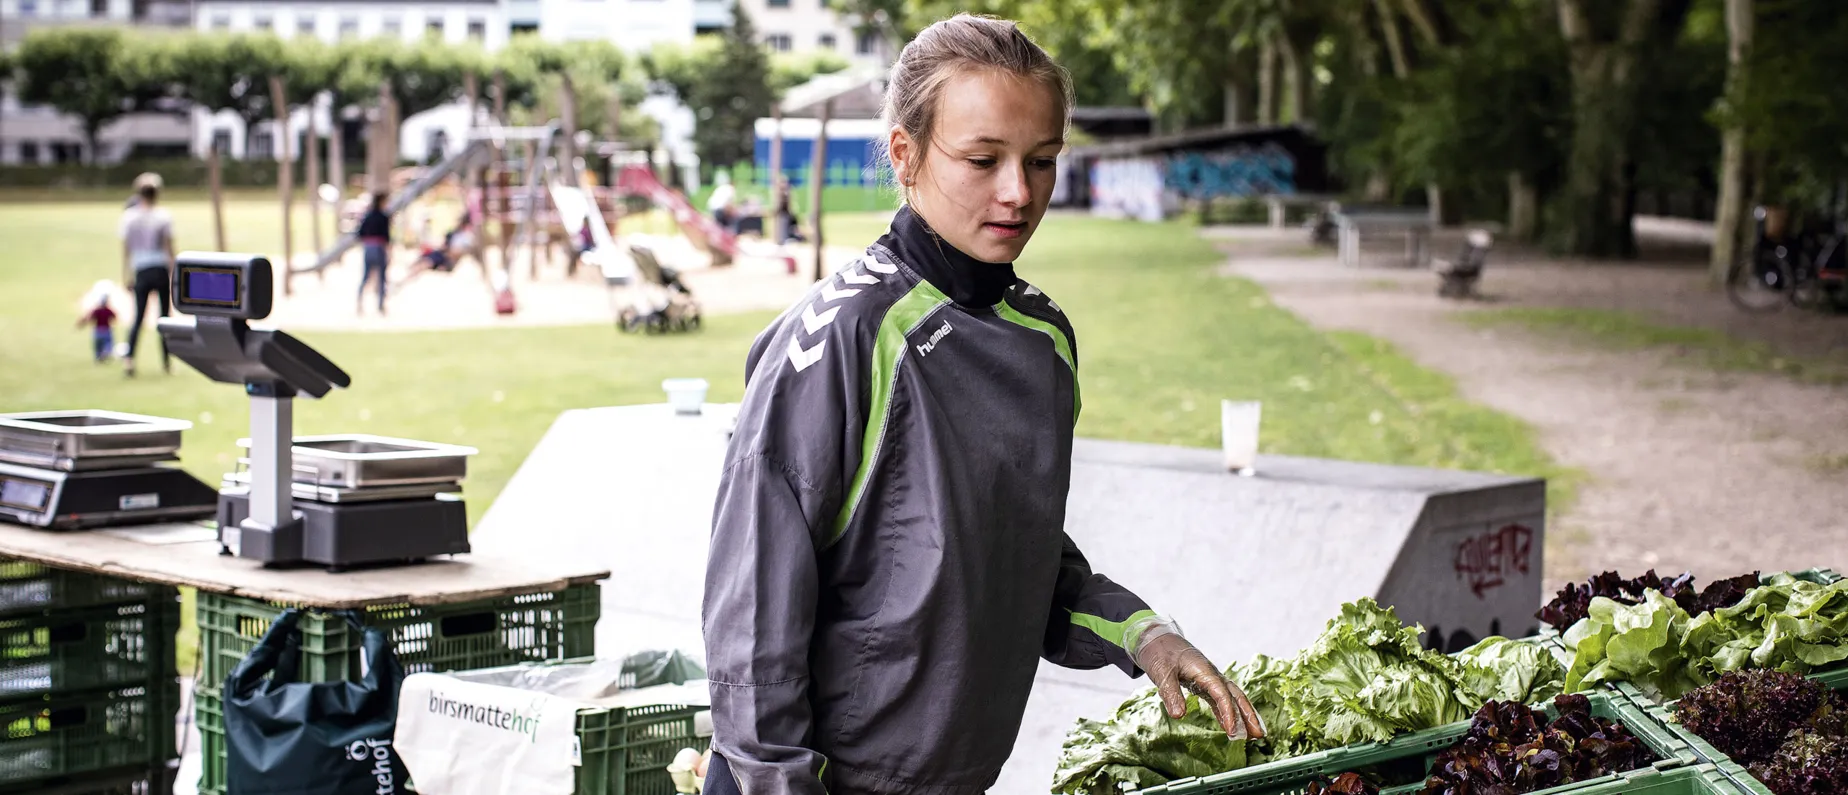 Birsmattehof: Hannah Kummerfeld, Mitarbeiterin Birsmattehof, verkauft im Sommer Bio-Gemüse auf den Wochenmärkten.